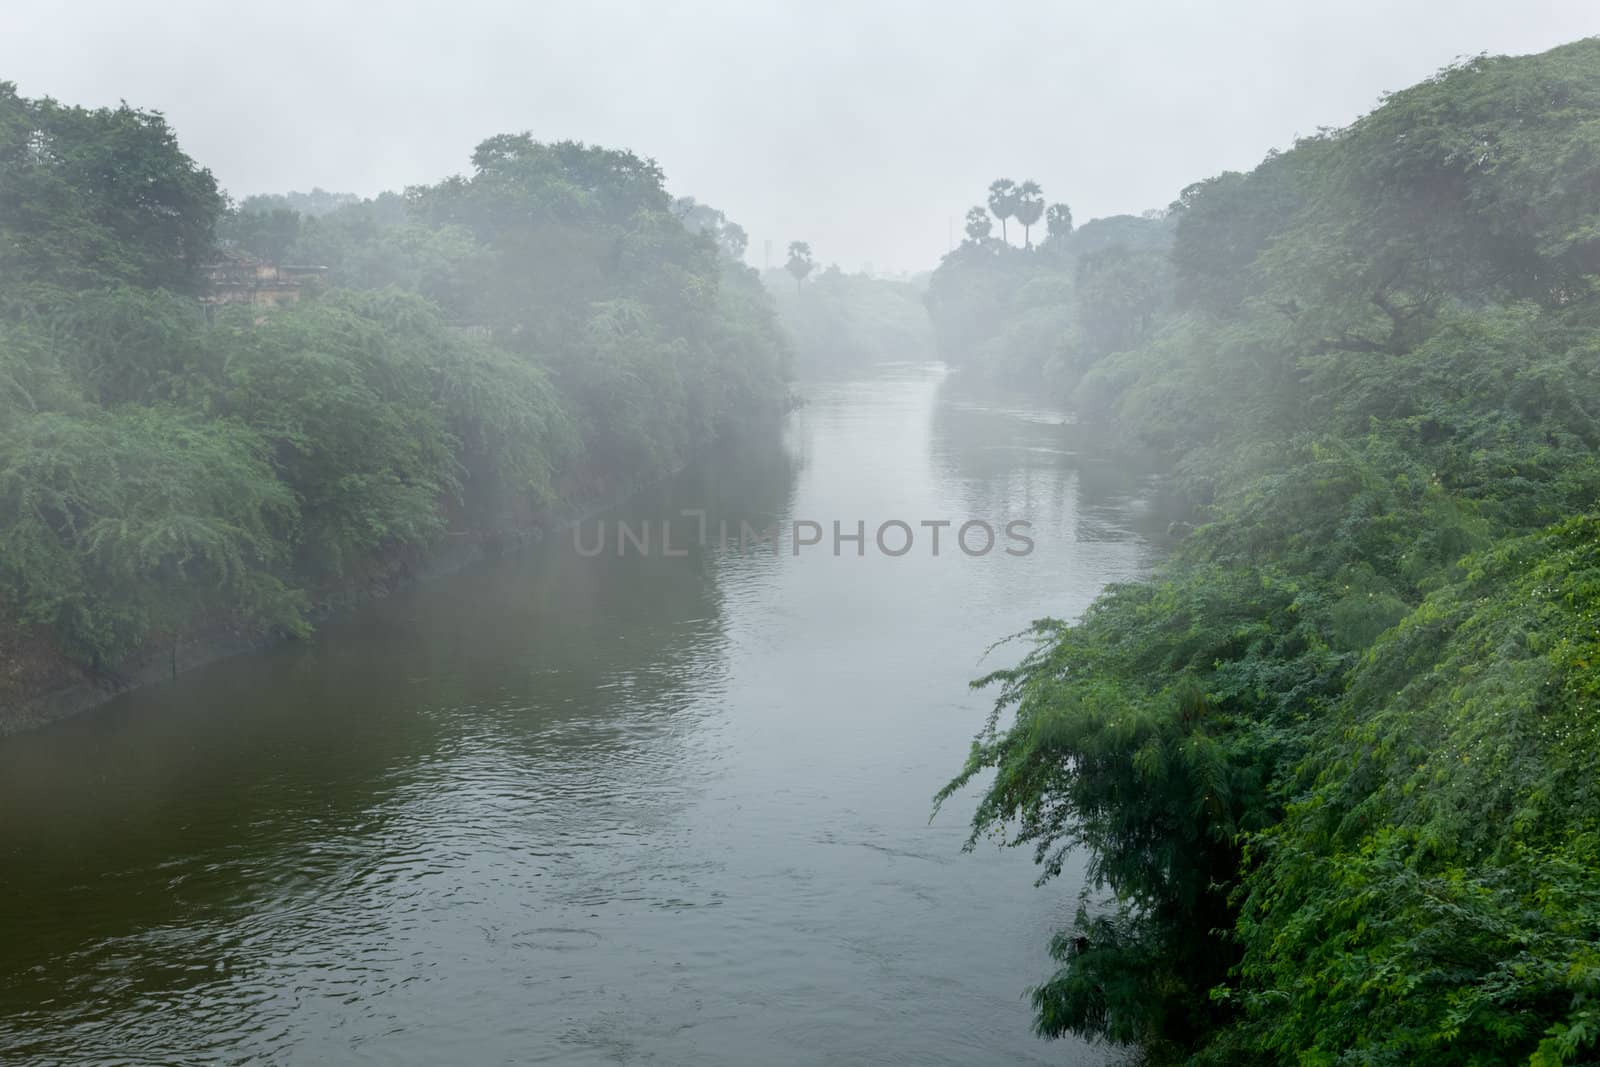 River in fog by dimol